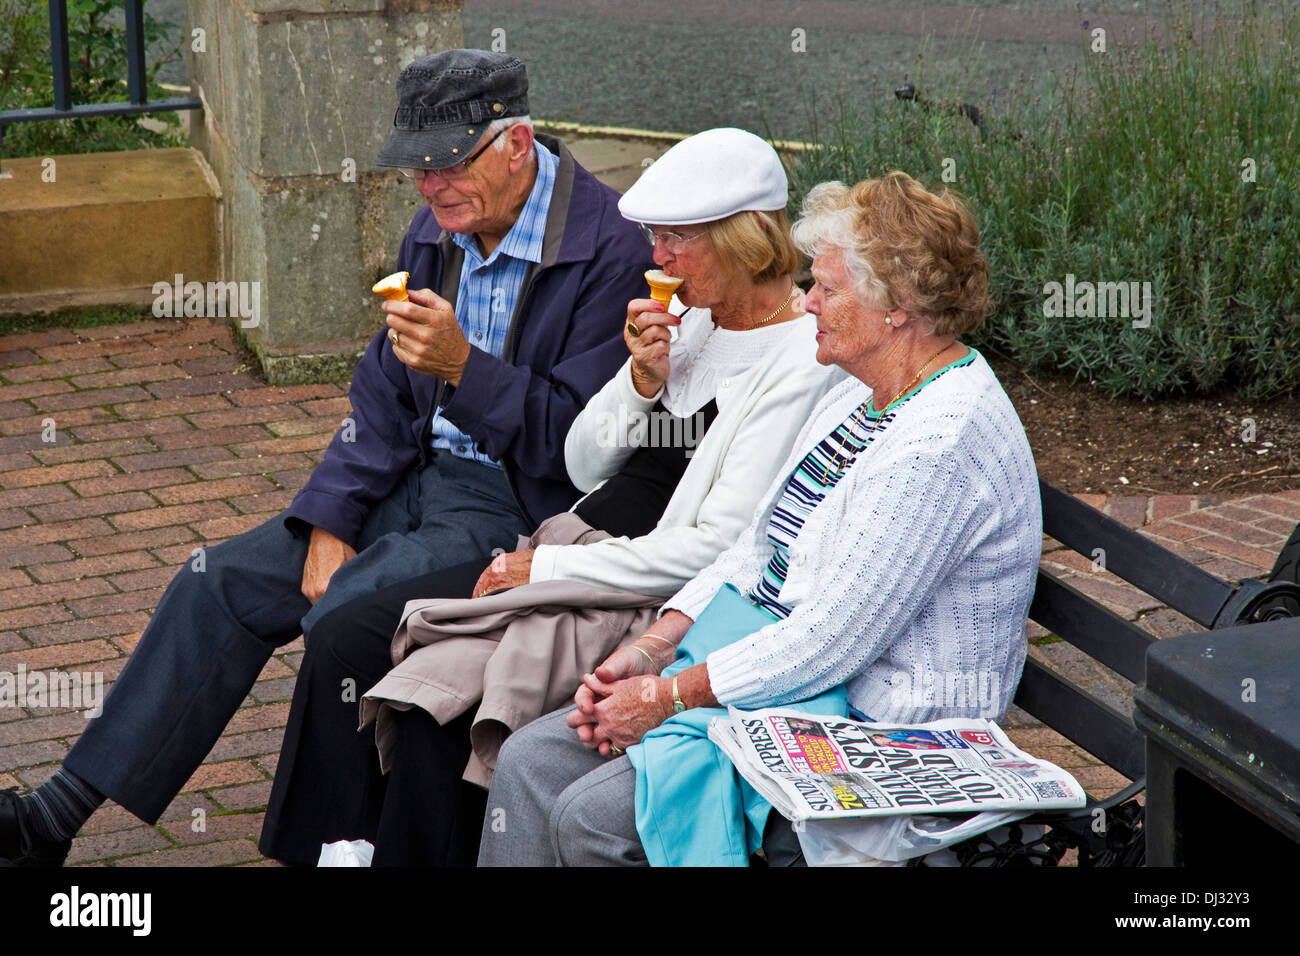 3 older people sitting on bench eating ice cream.  Ironbridge, Shropshire, West Midlands, England, UK Stock Photo